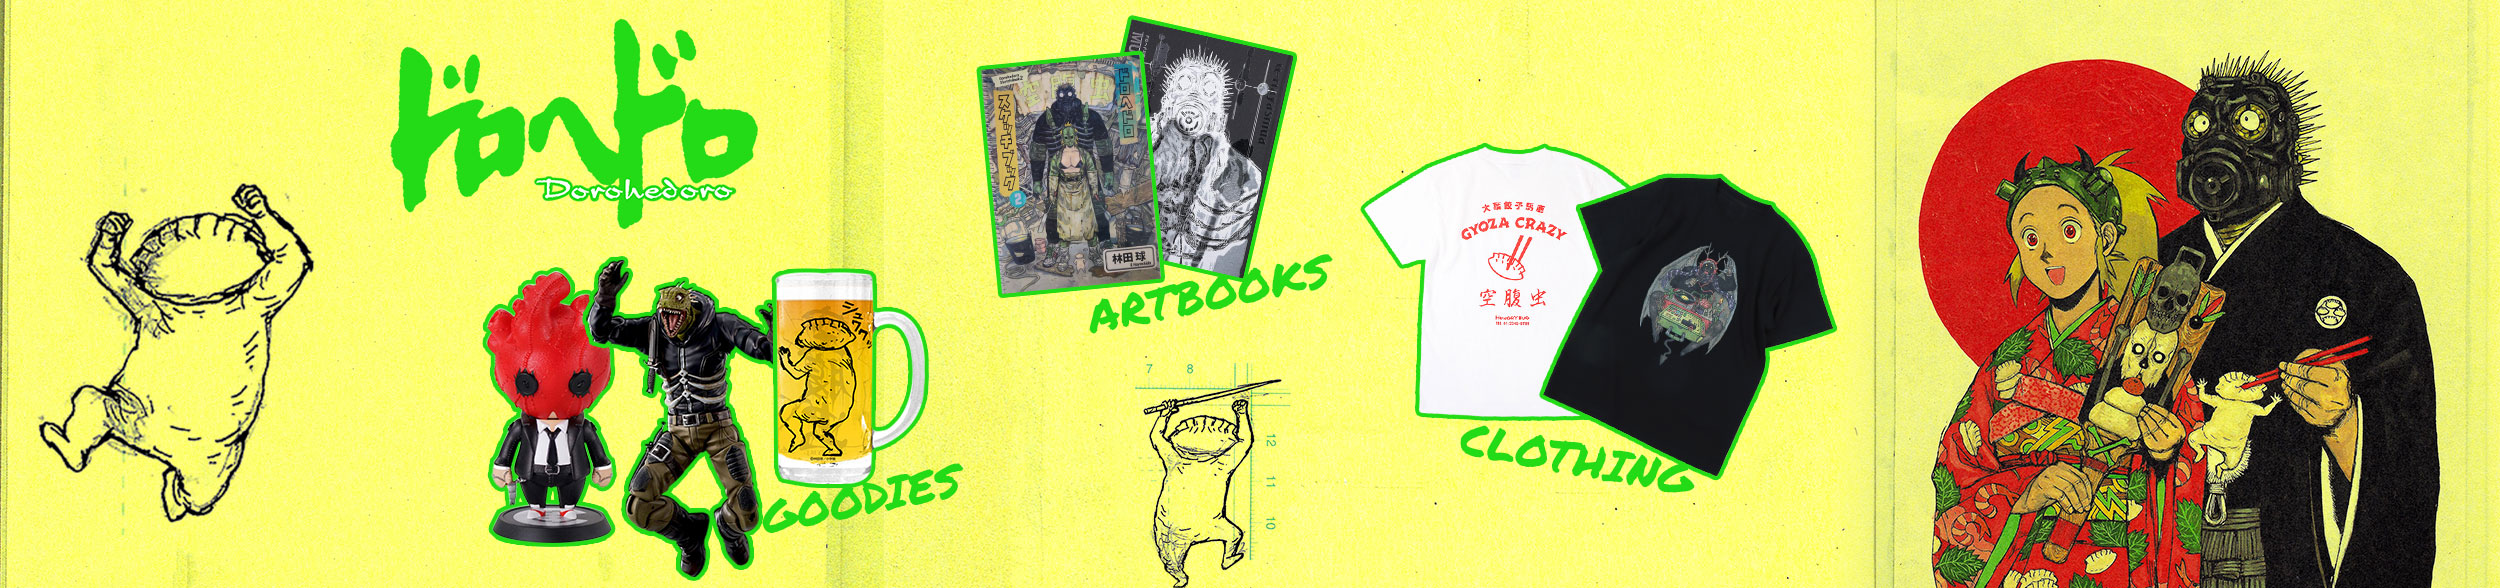 Livros de arte, estatuetas, canecas, guloseimas, roupas... todos os nossos produtos Dorohedoro!